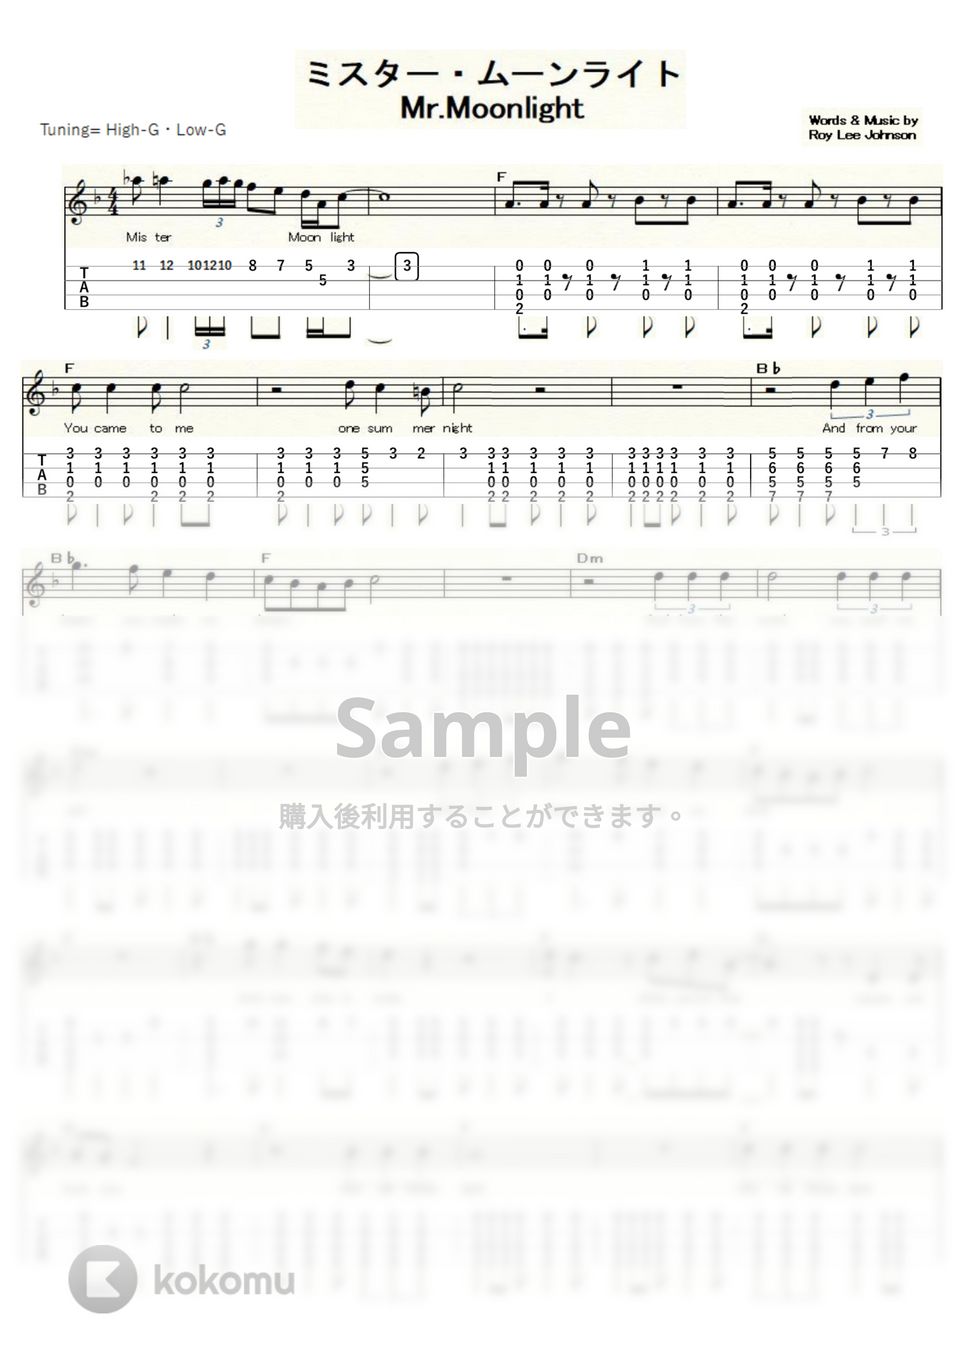 ビートルズ - Mr. Moonlight (ｳｸﾚﾚｿﾛ/High-G・Low-G/中級) by ukulelepapa